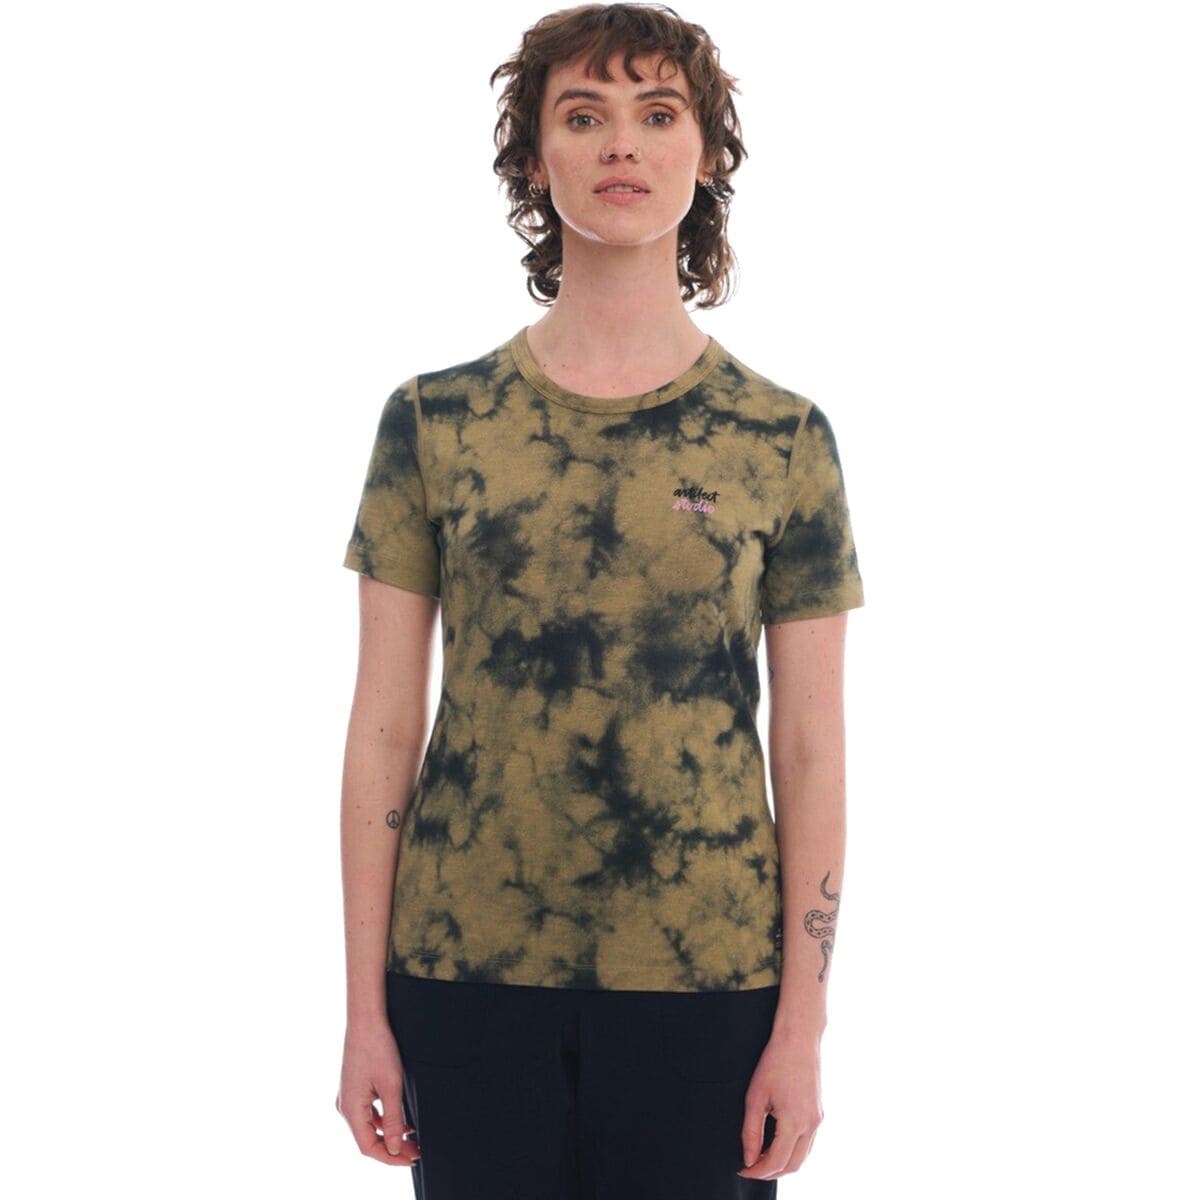 Artilect Echo Canyon T-Shirt - Women's